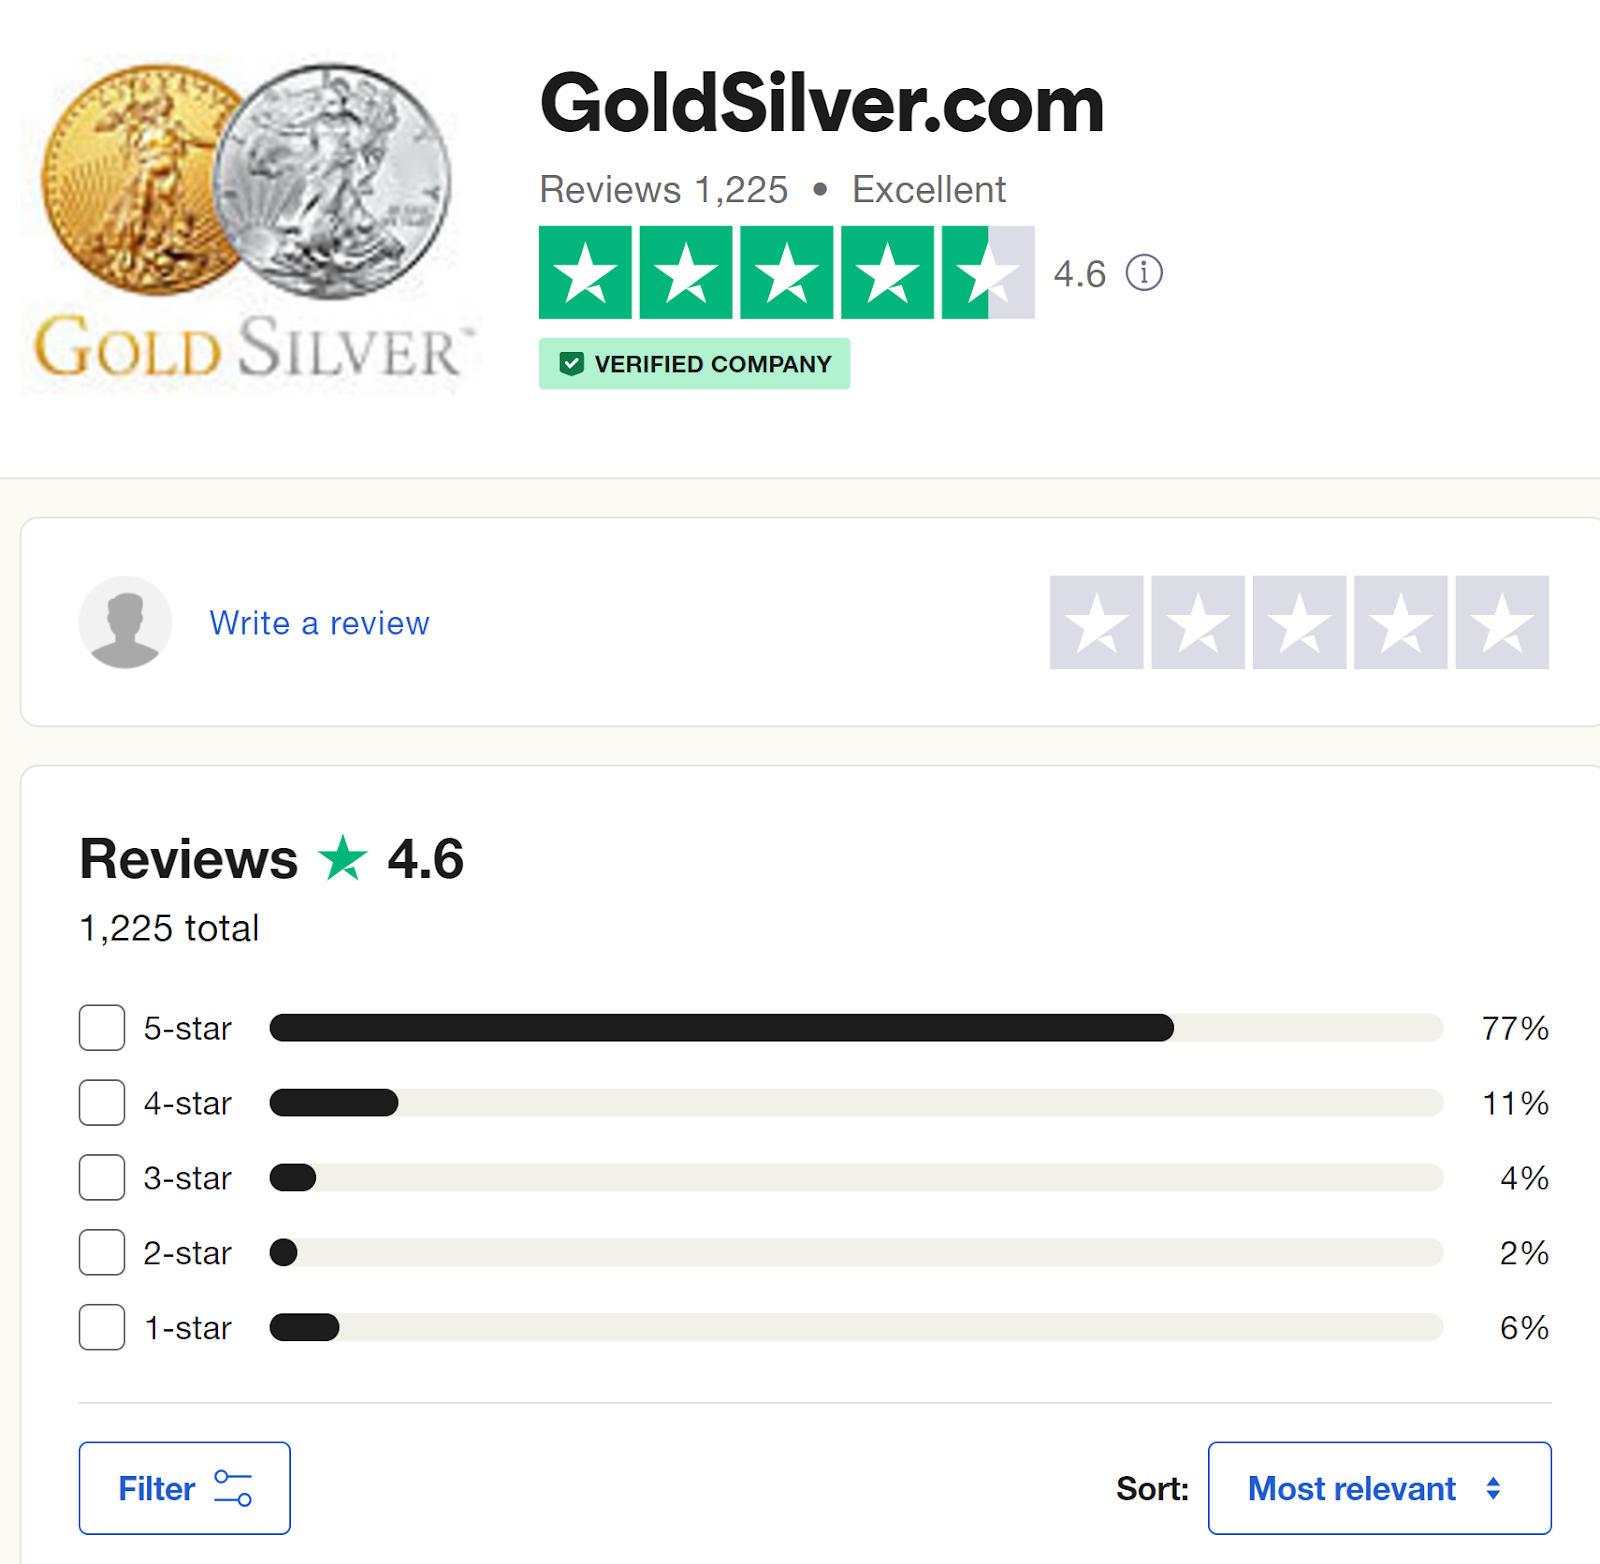 goldsilver.com complaints